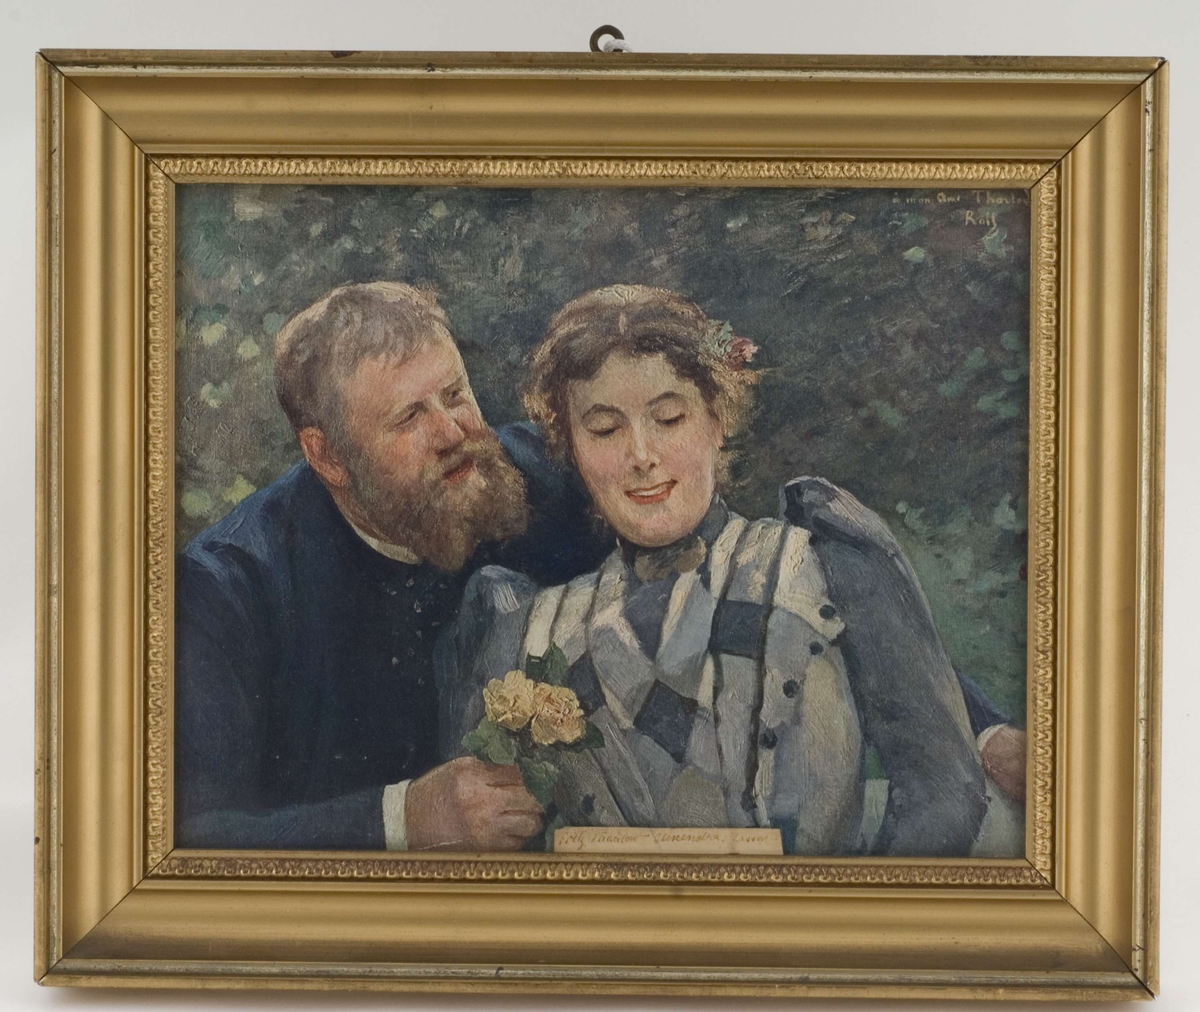 Brystportrett av maleren Fritz Thaulow og hans andre kone, Alexandra f. Lasson.